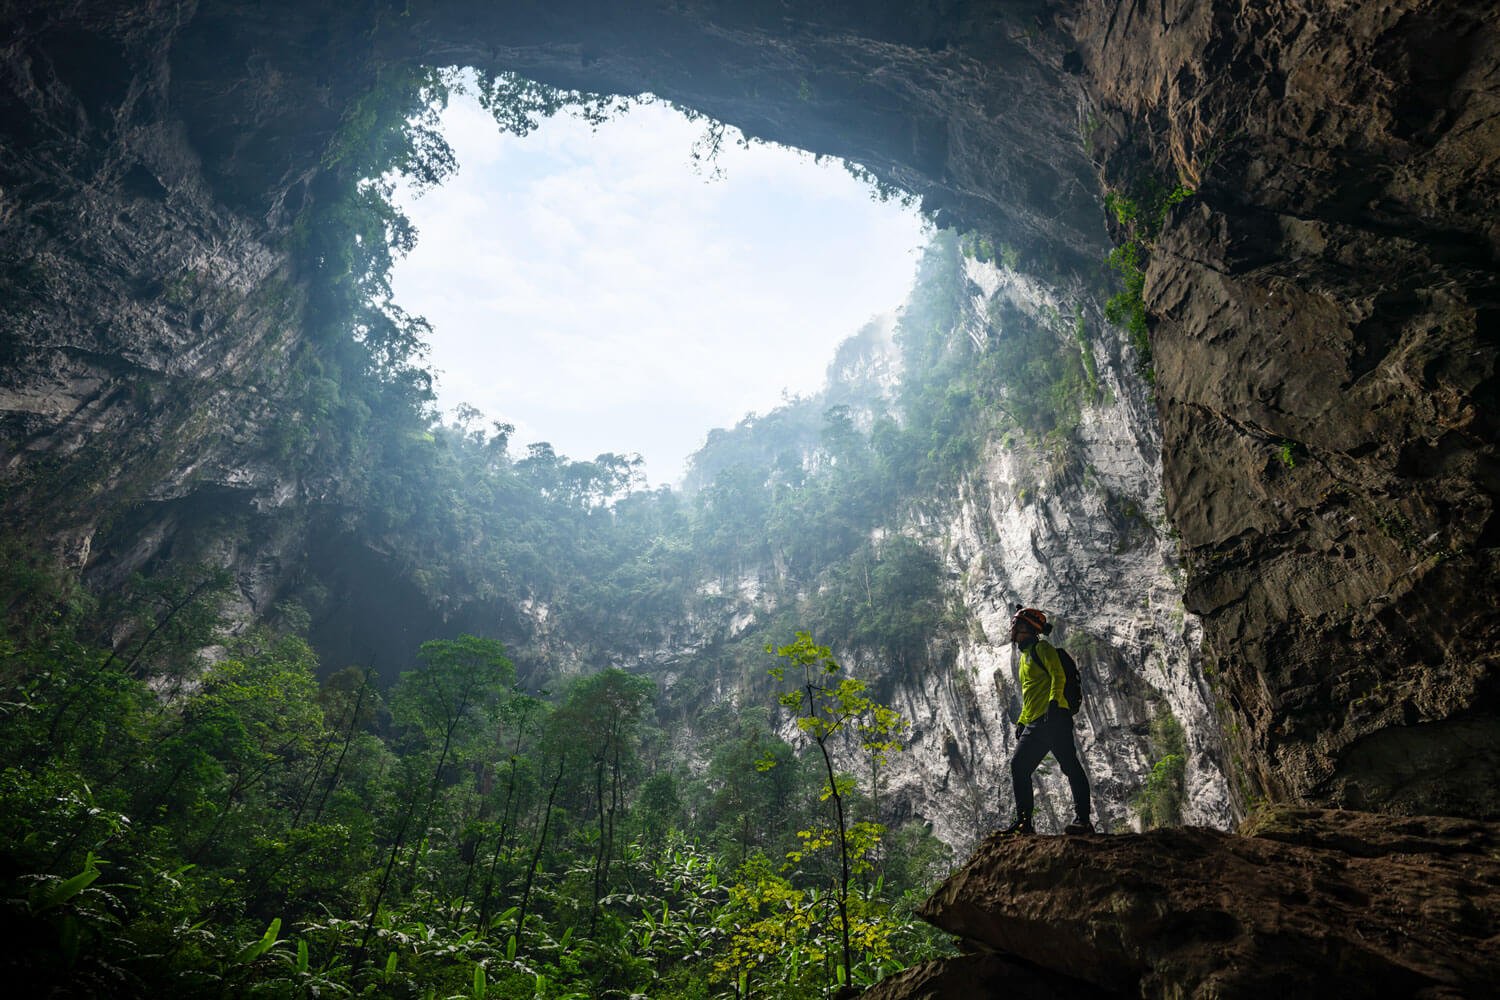 Doline 2 - Garden of Edam a primeval jungle inside the cave